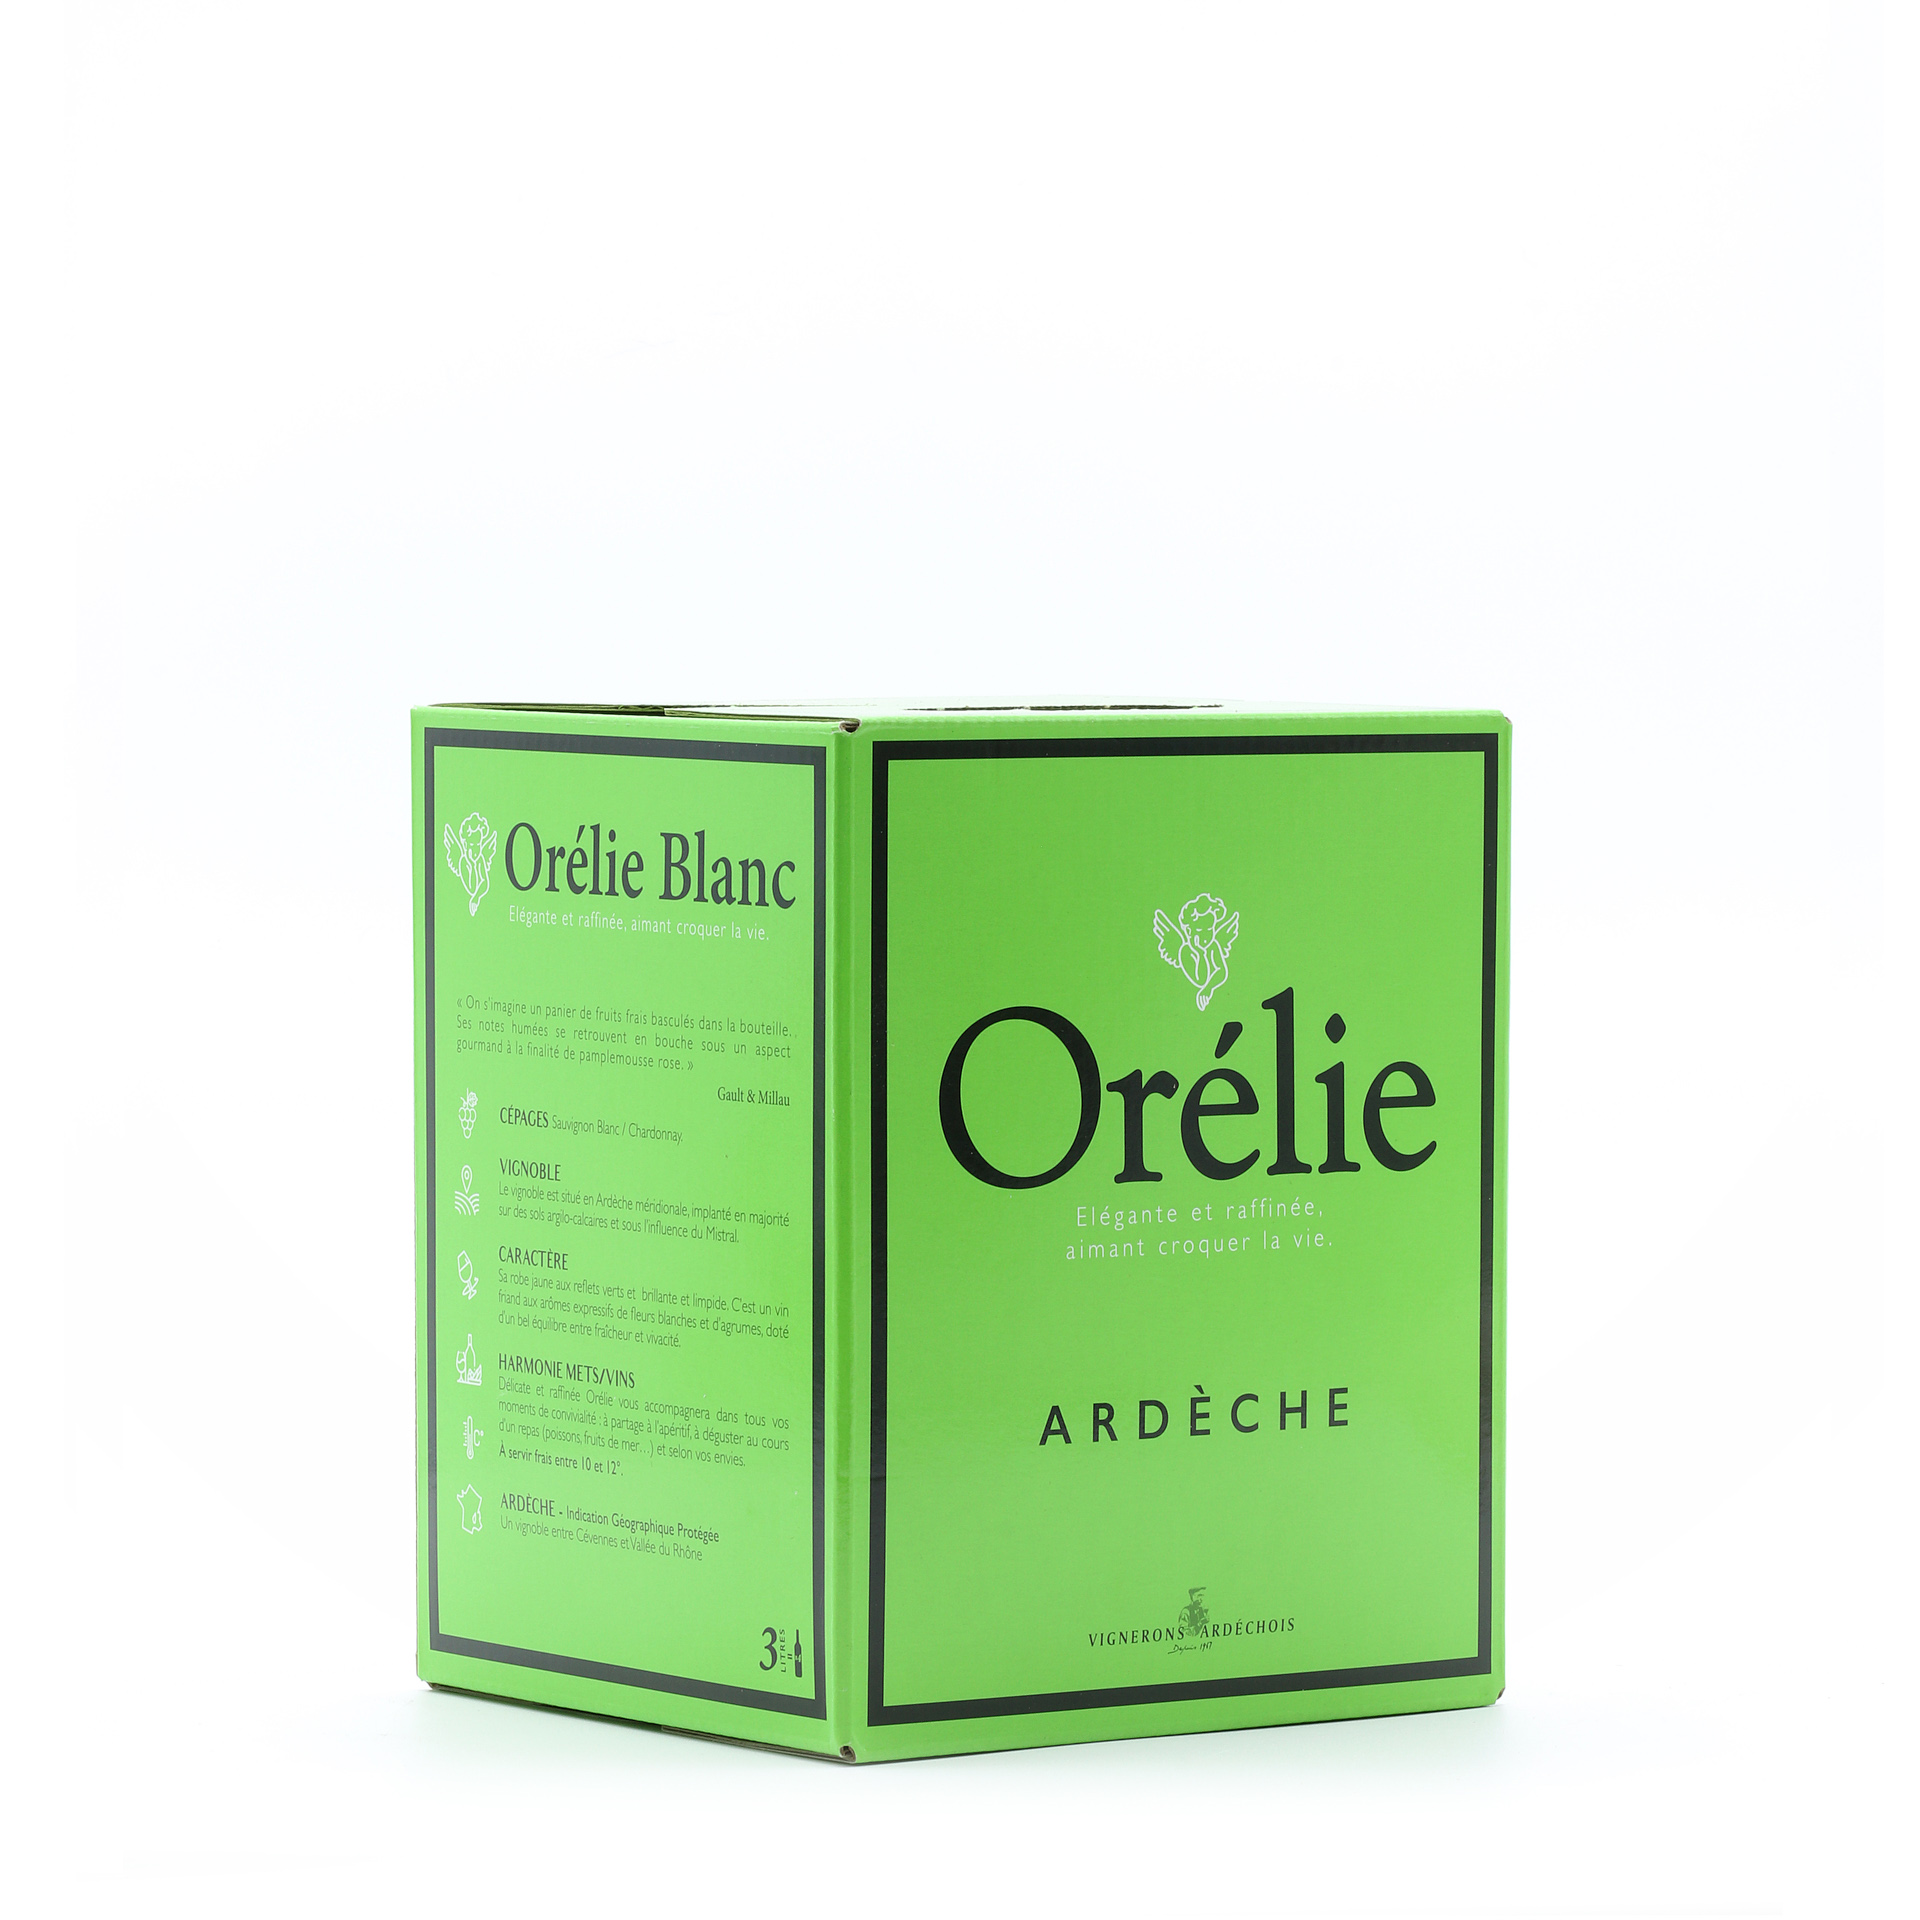 BIB d'Orelie blanc 3 litres